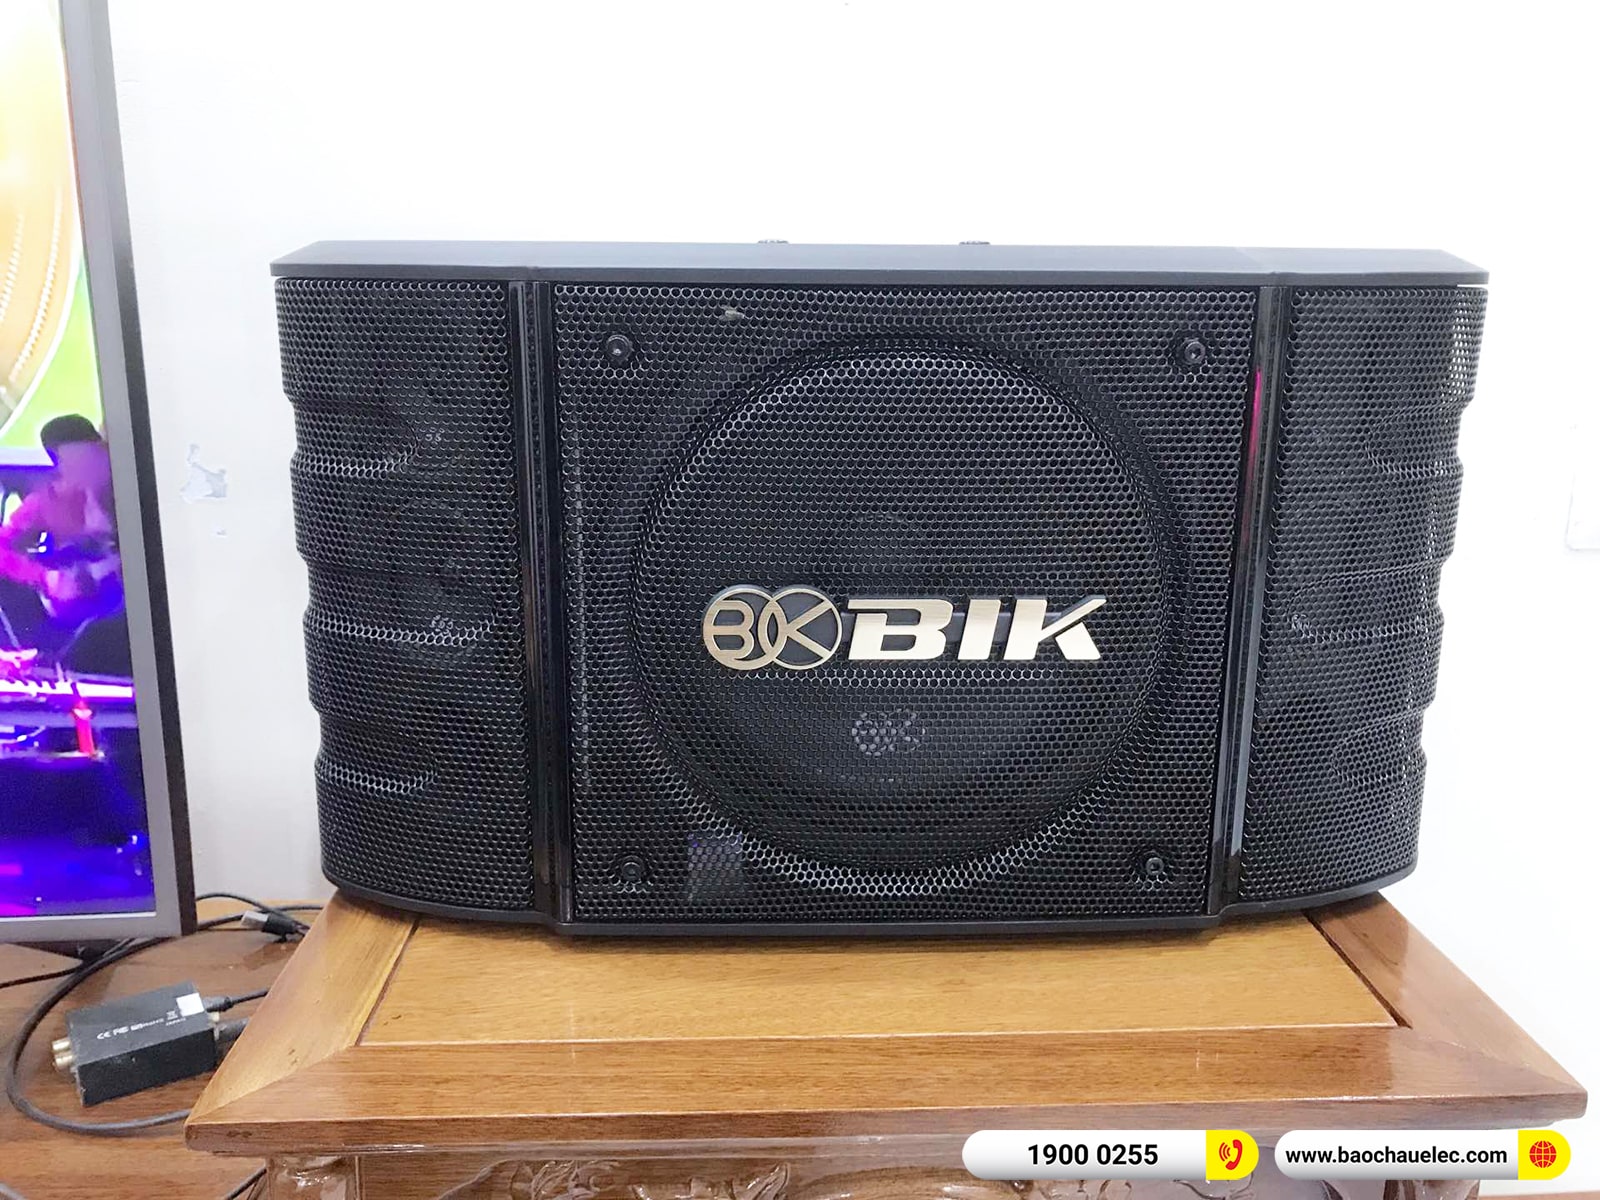 Lắp đặt dàn karaoke BIK hơn 26tr cho anh An tại Thái Bình (BIK BS-998X, VM420A, KP500, SW512, BJ-U100)